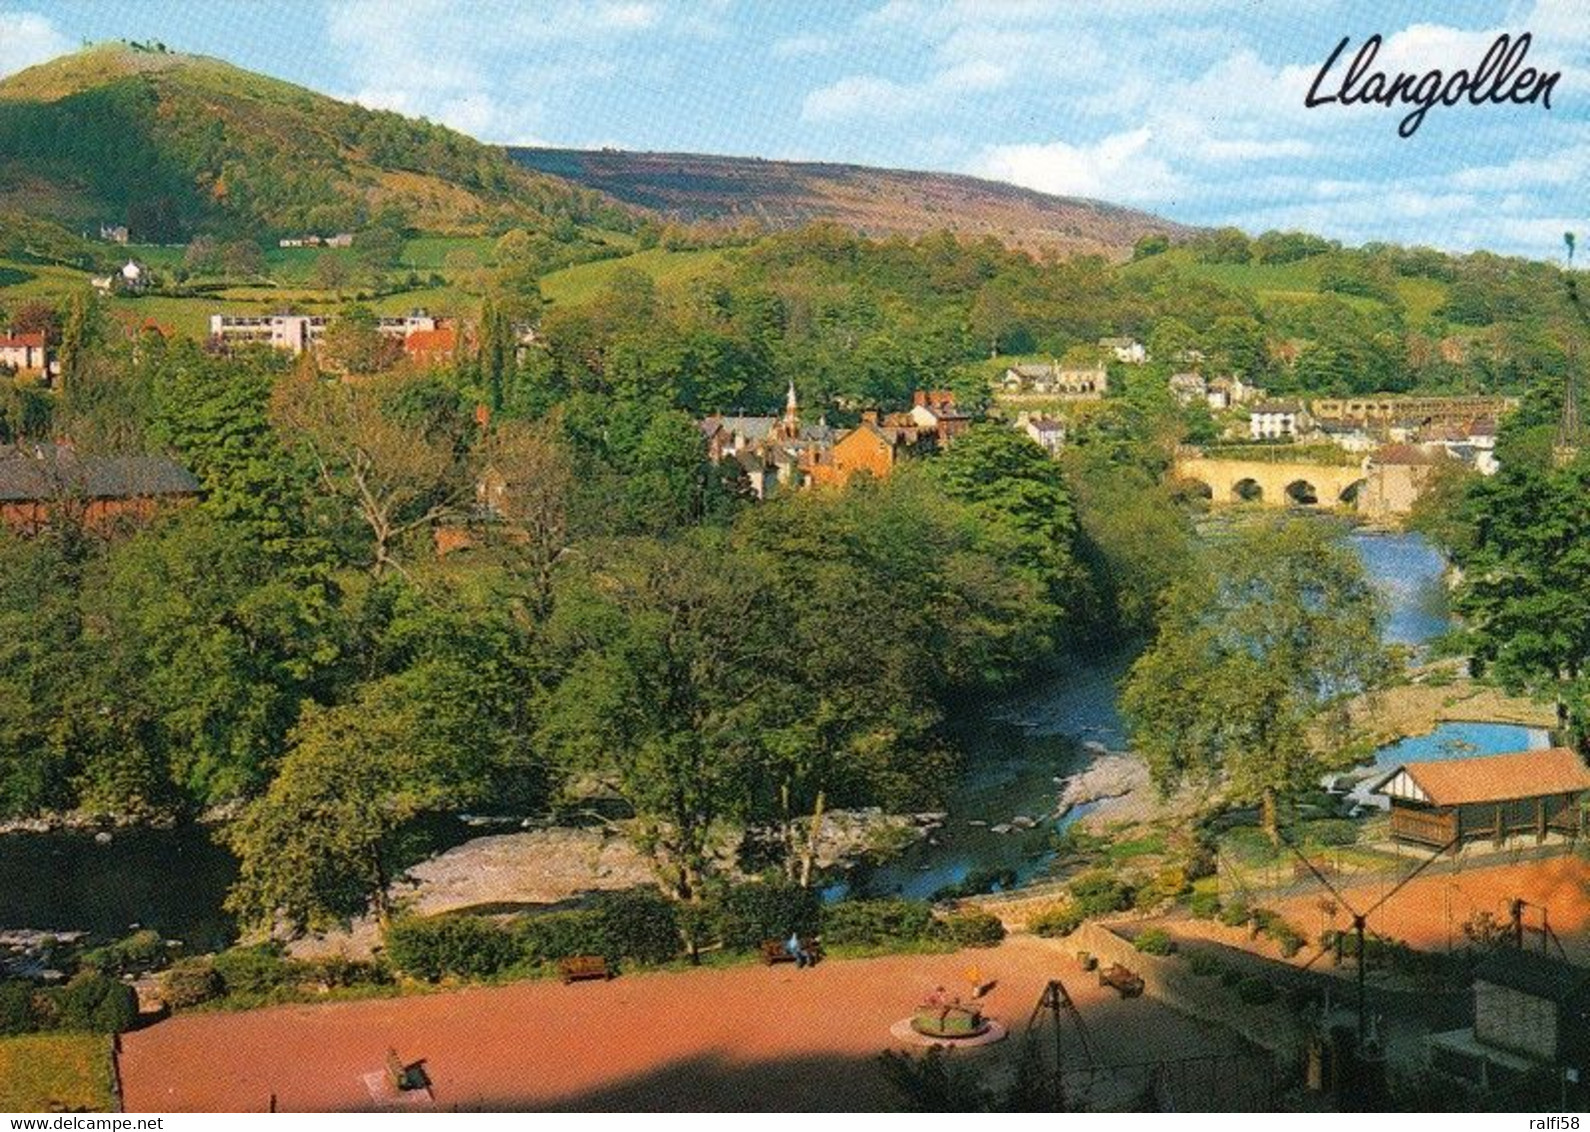 1 AK Wales * Ansicht Von Llangollen - Der Ort Liegt In Der Grafschaft Denbighshire Im Nordosten Von Wales * - Denbighshire